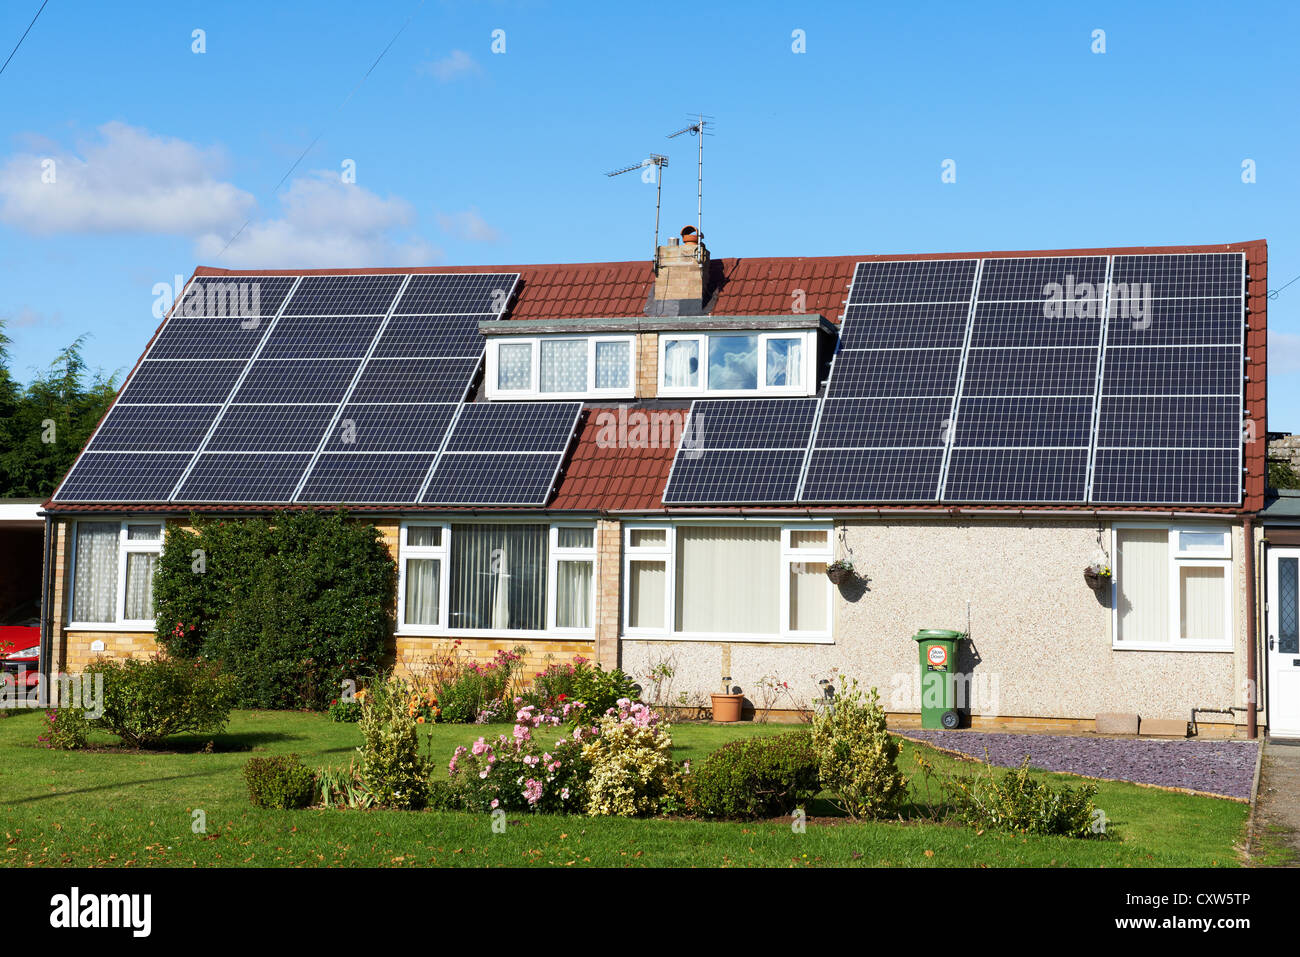 Maison mitoyenne dorma bungalows avec des panneaux solaires sur le toit Hilmorton Road Rugby UK Banque D'Images